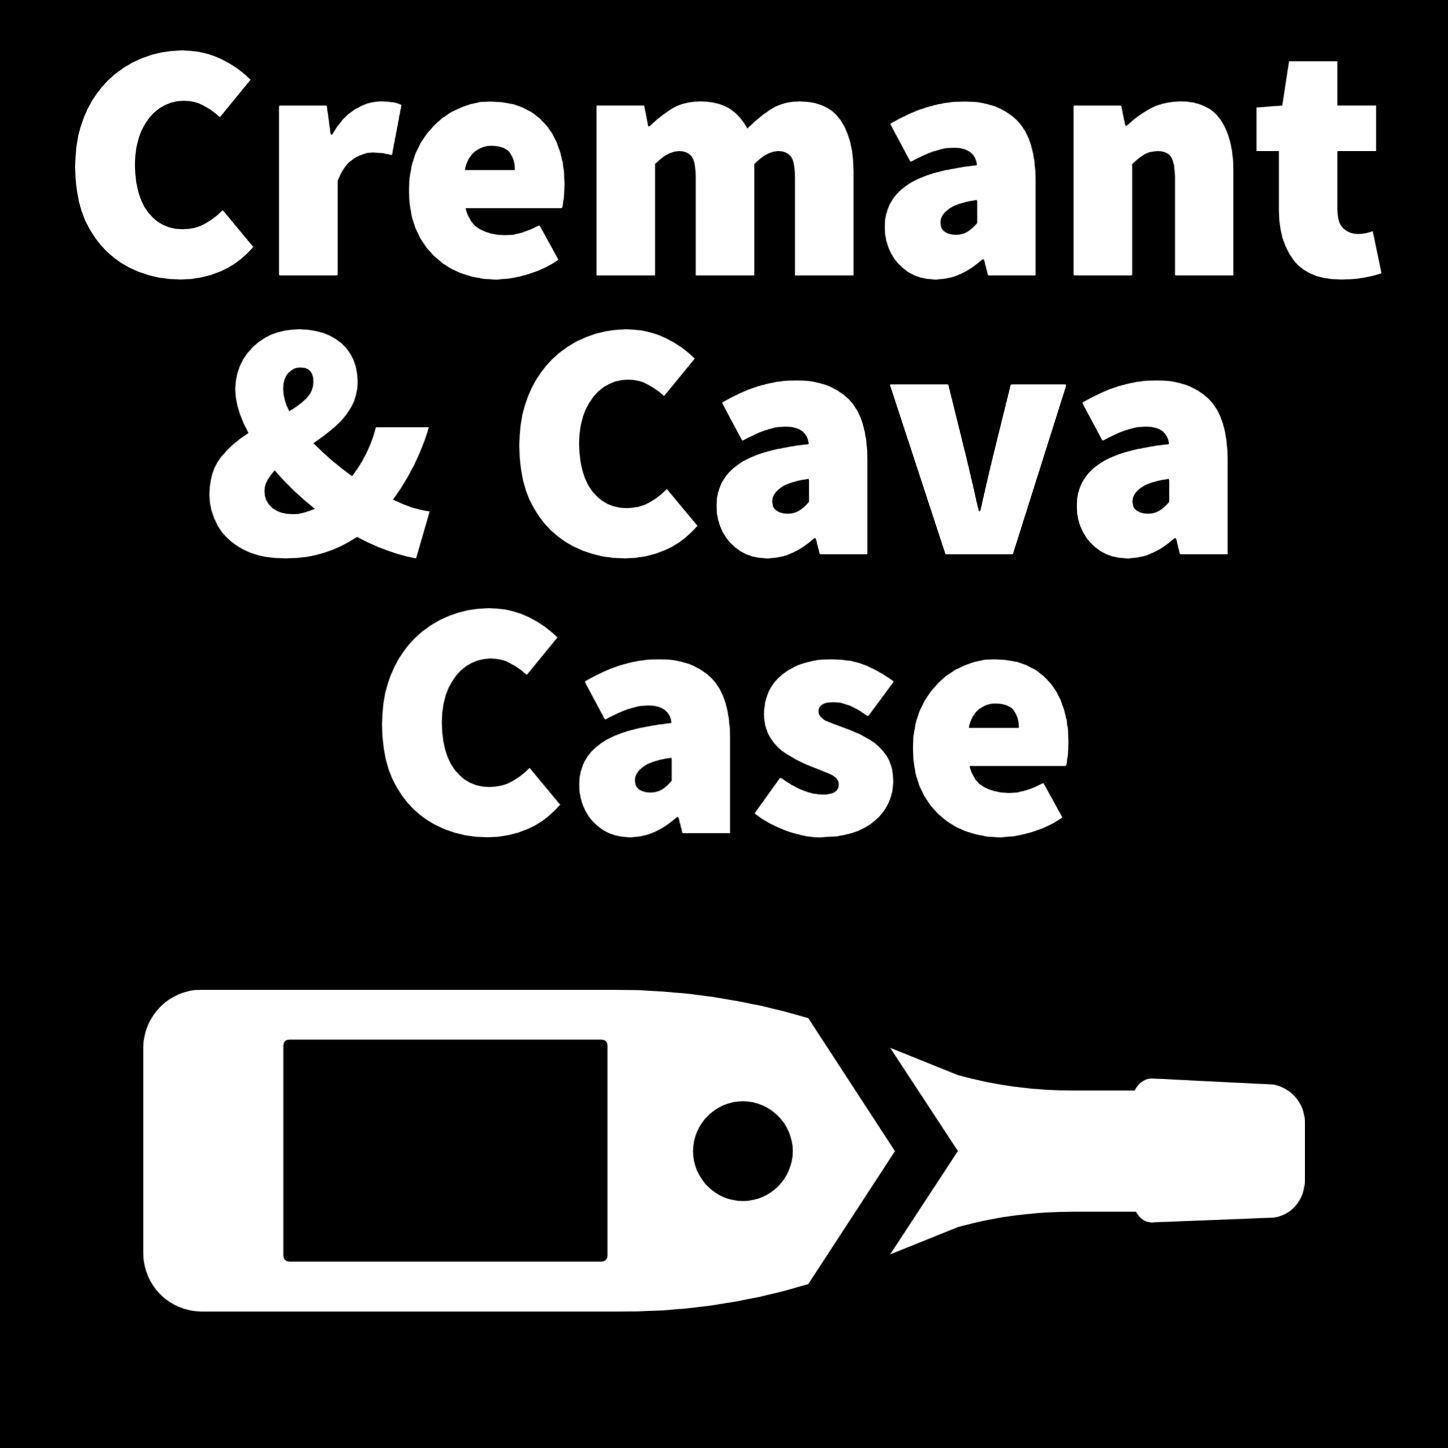 Cremant & Cava Case